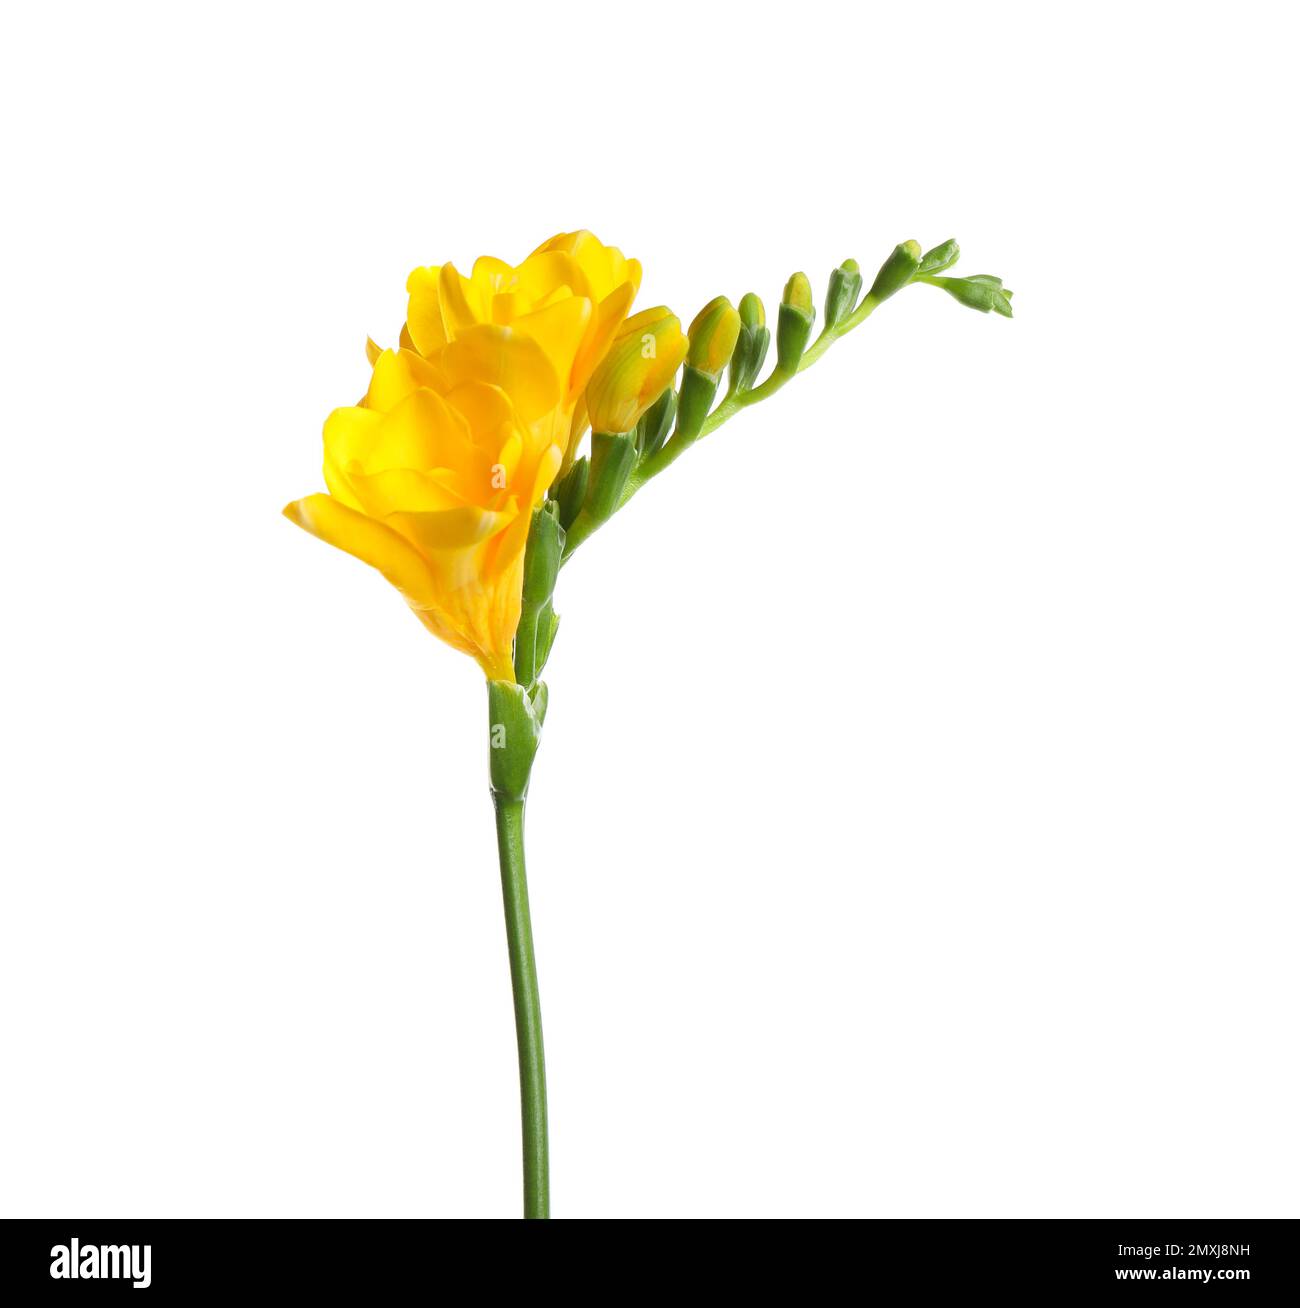 Belle fleur jaune de freesia isolée sur blanc Photo Stock - Alamy